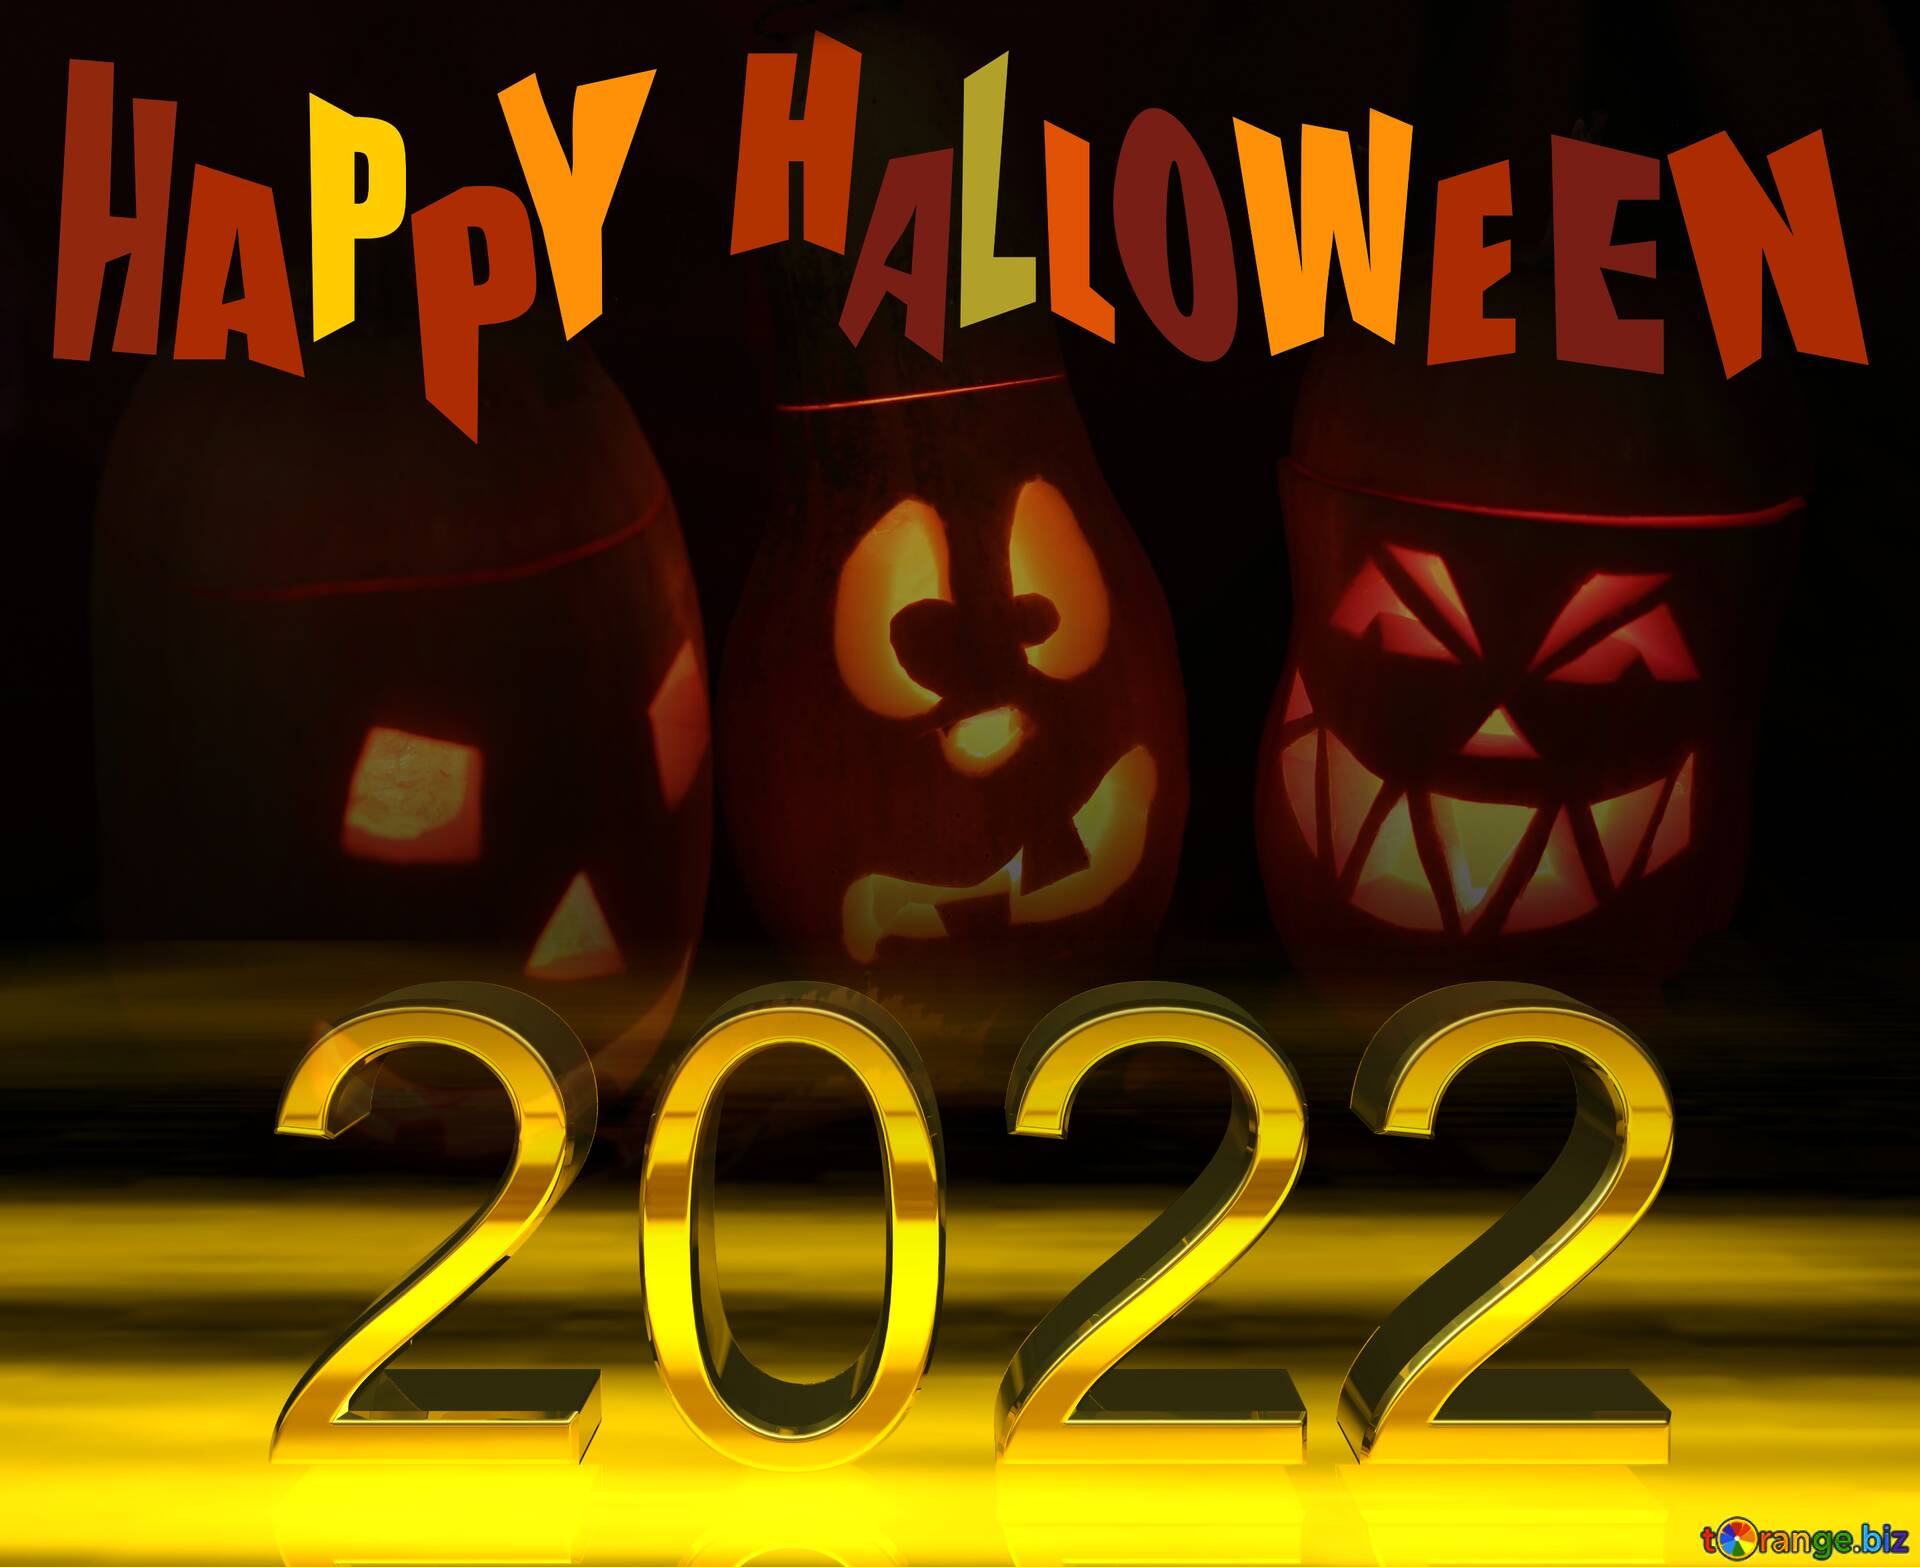 phd halloween 2022